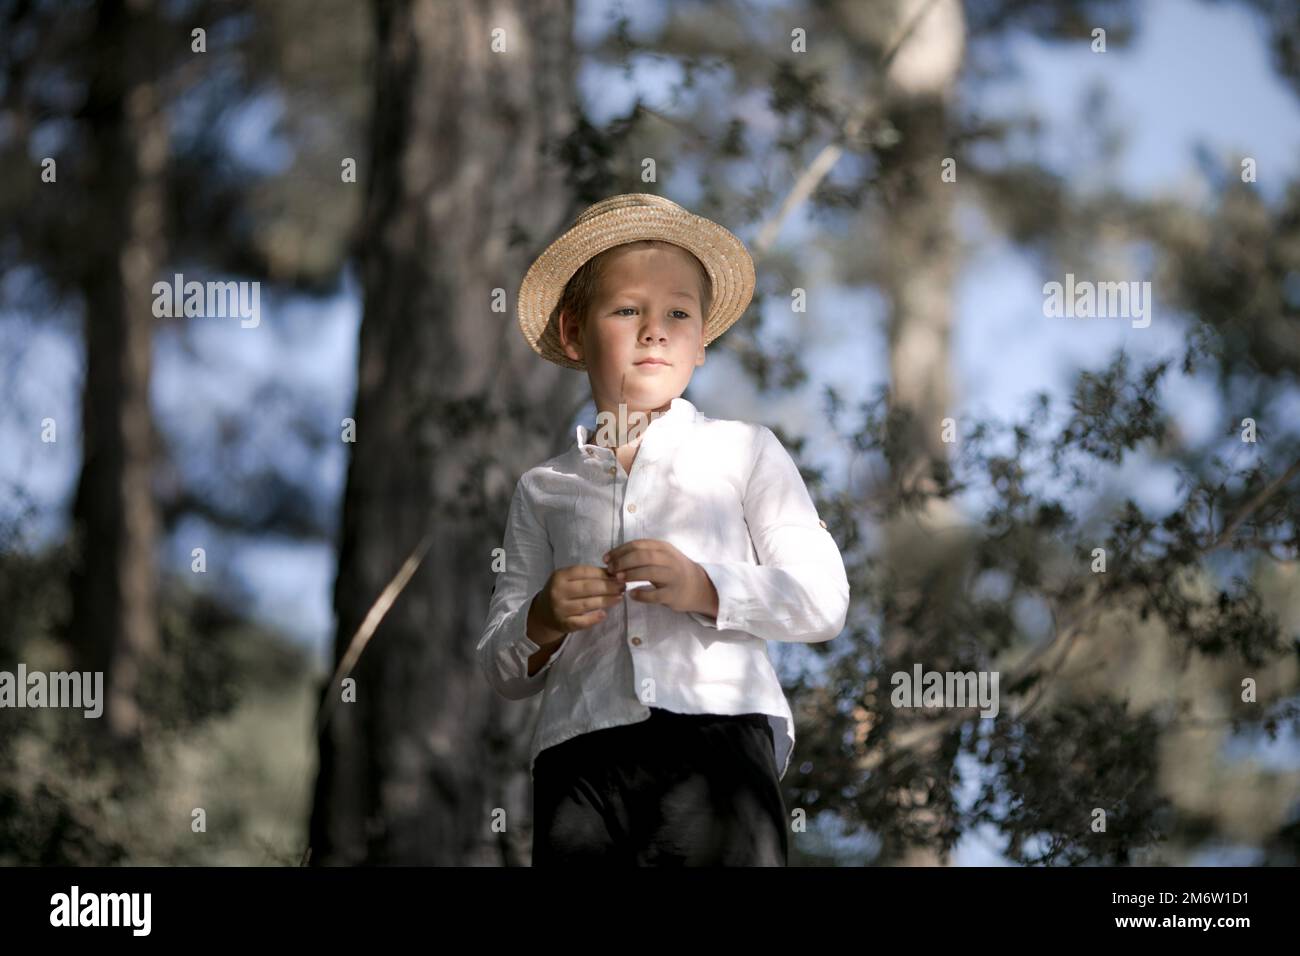 Un Niño Pequeño Con Un Sombrero De Paja. Chico Pequeño Y Tímido Fotos,  retratos, imágenes y fotografía de archivo libres de derecho. Image 82776649